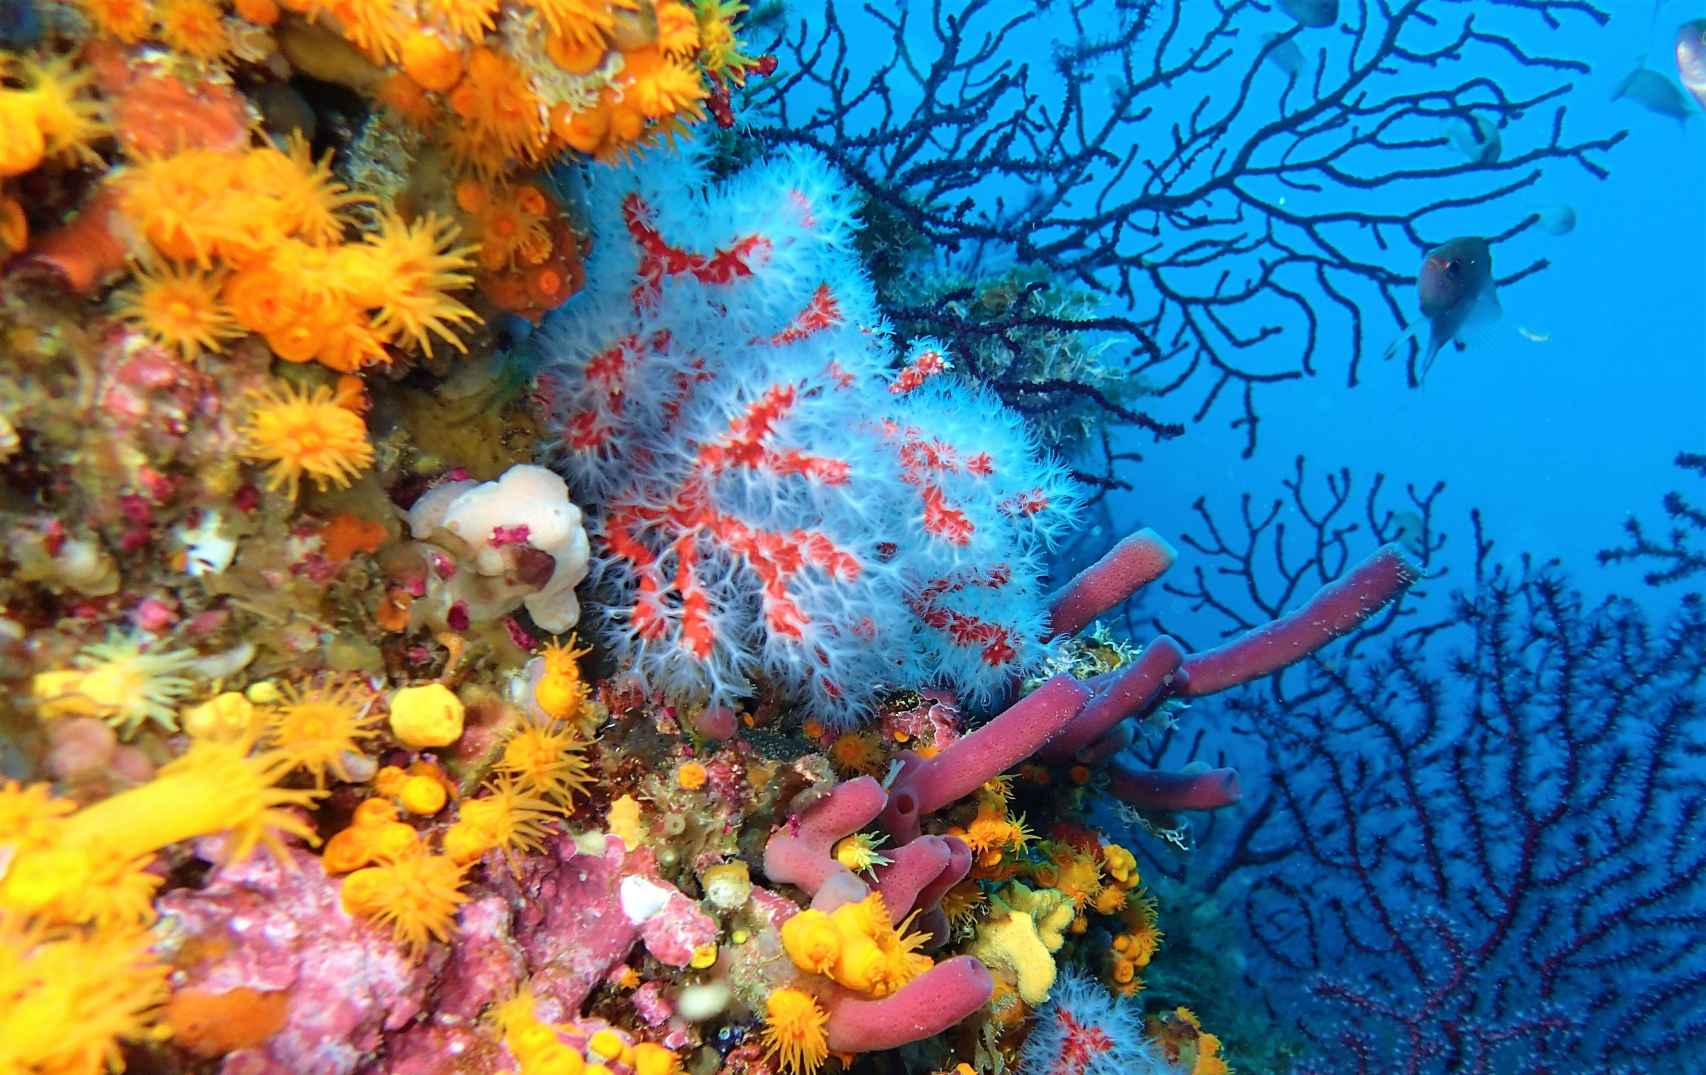 Coral rojo en Perejil, con sus tentáculos blancos desplegados.